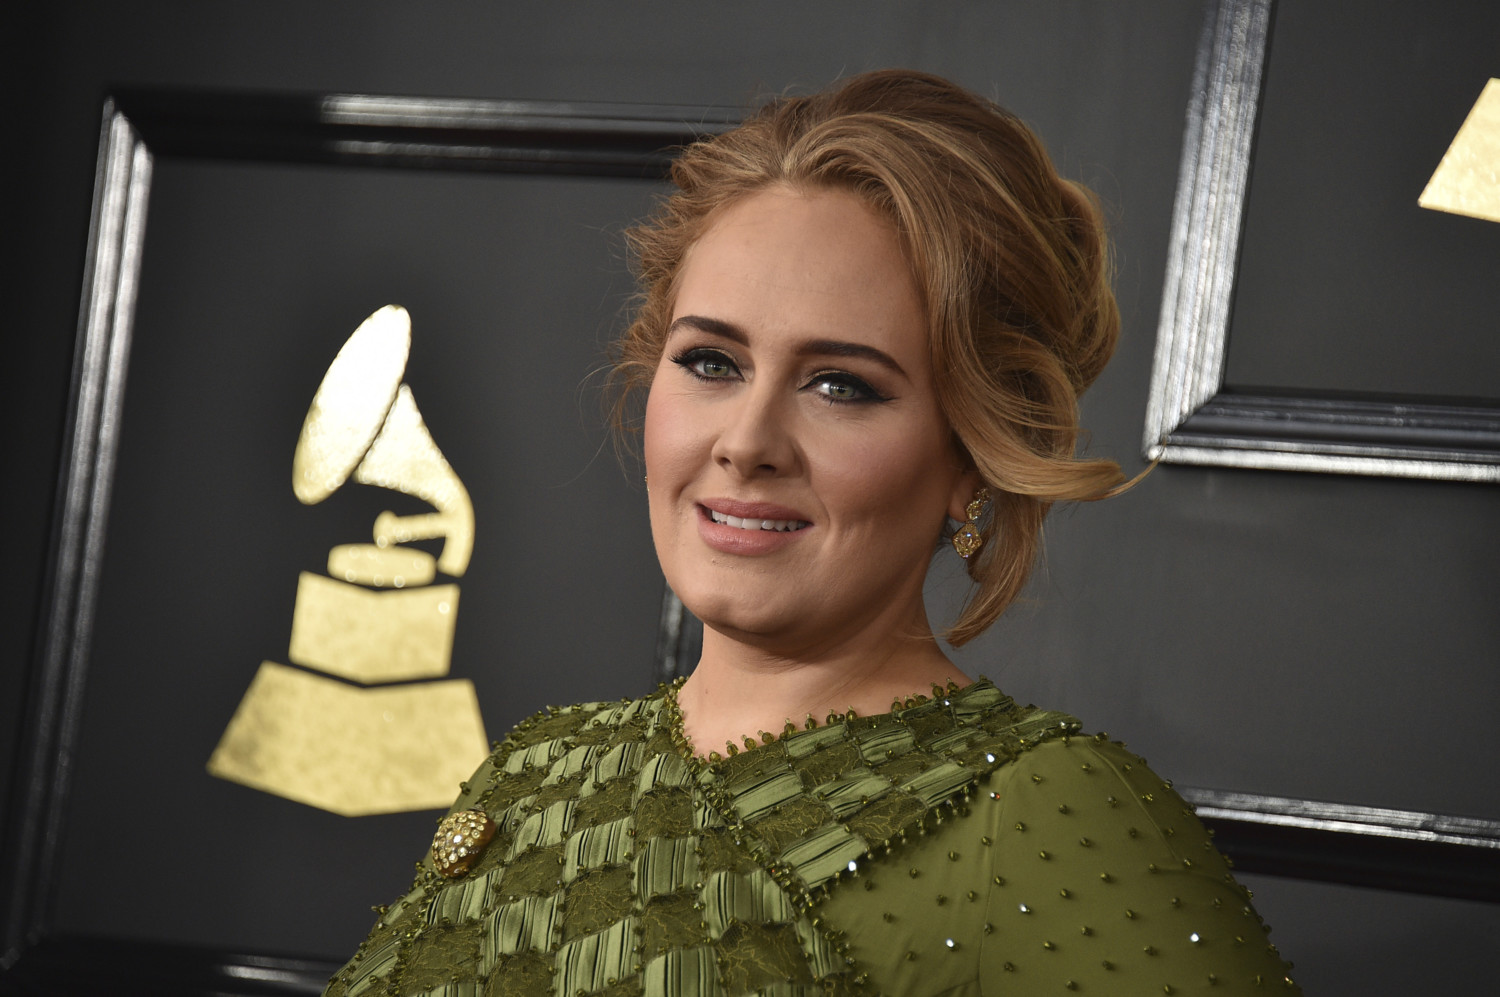 Adele arrives at 2017 Grammys